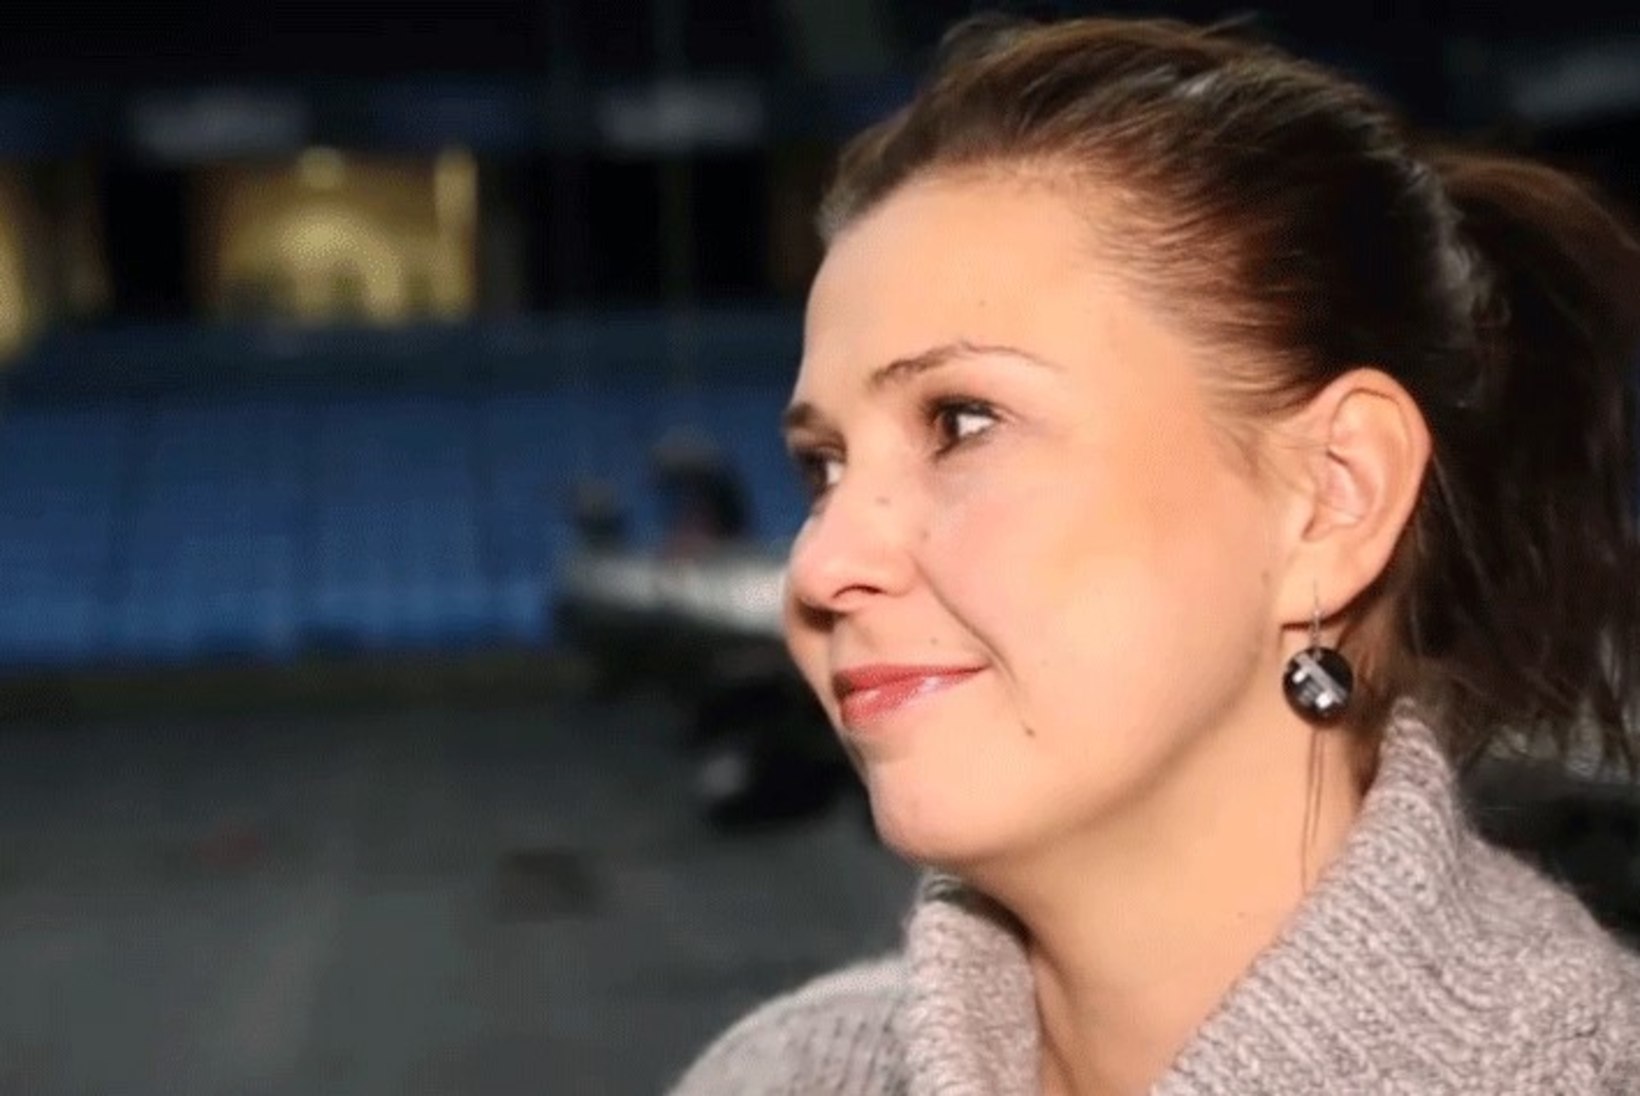 ÕHTULEHE VIDEO | Vaata, mida soovib Maiken kõikidele Eesti inimestele algavaks aastaks